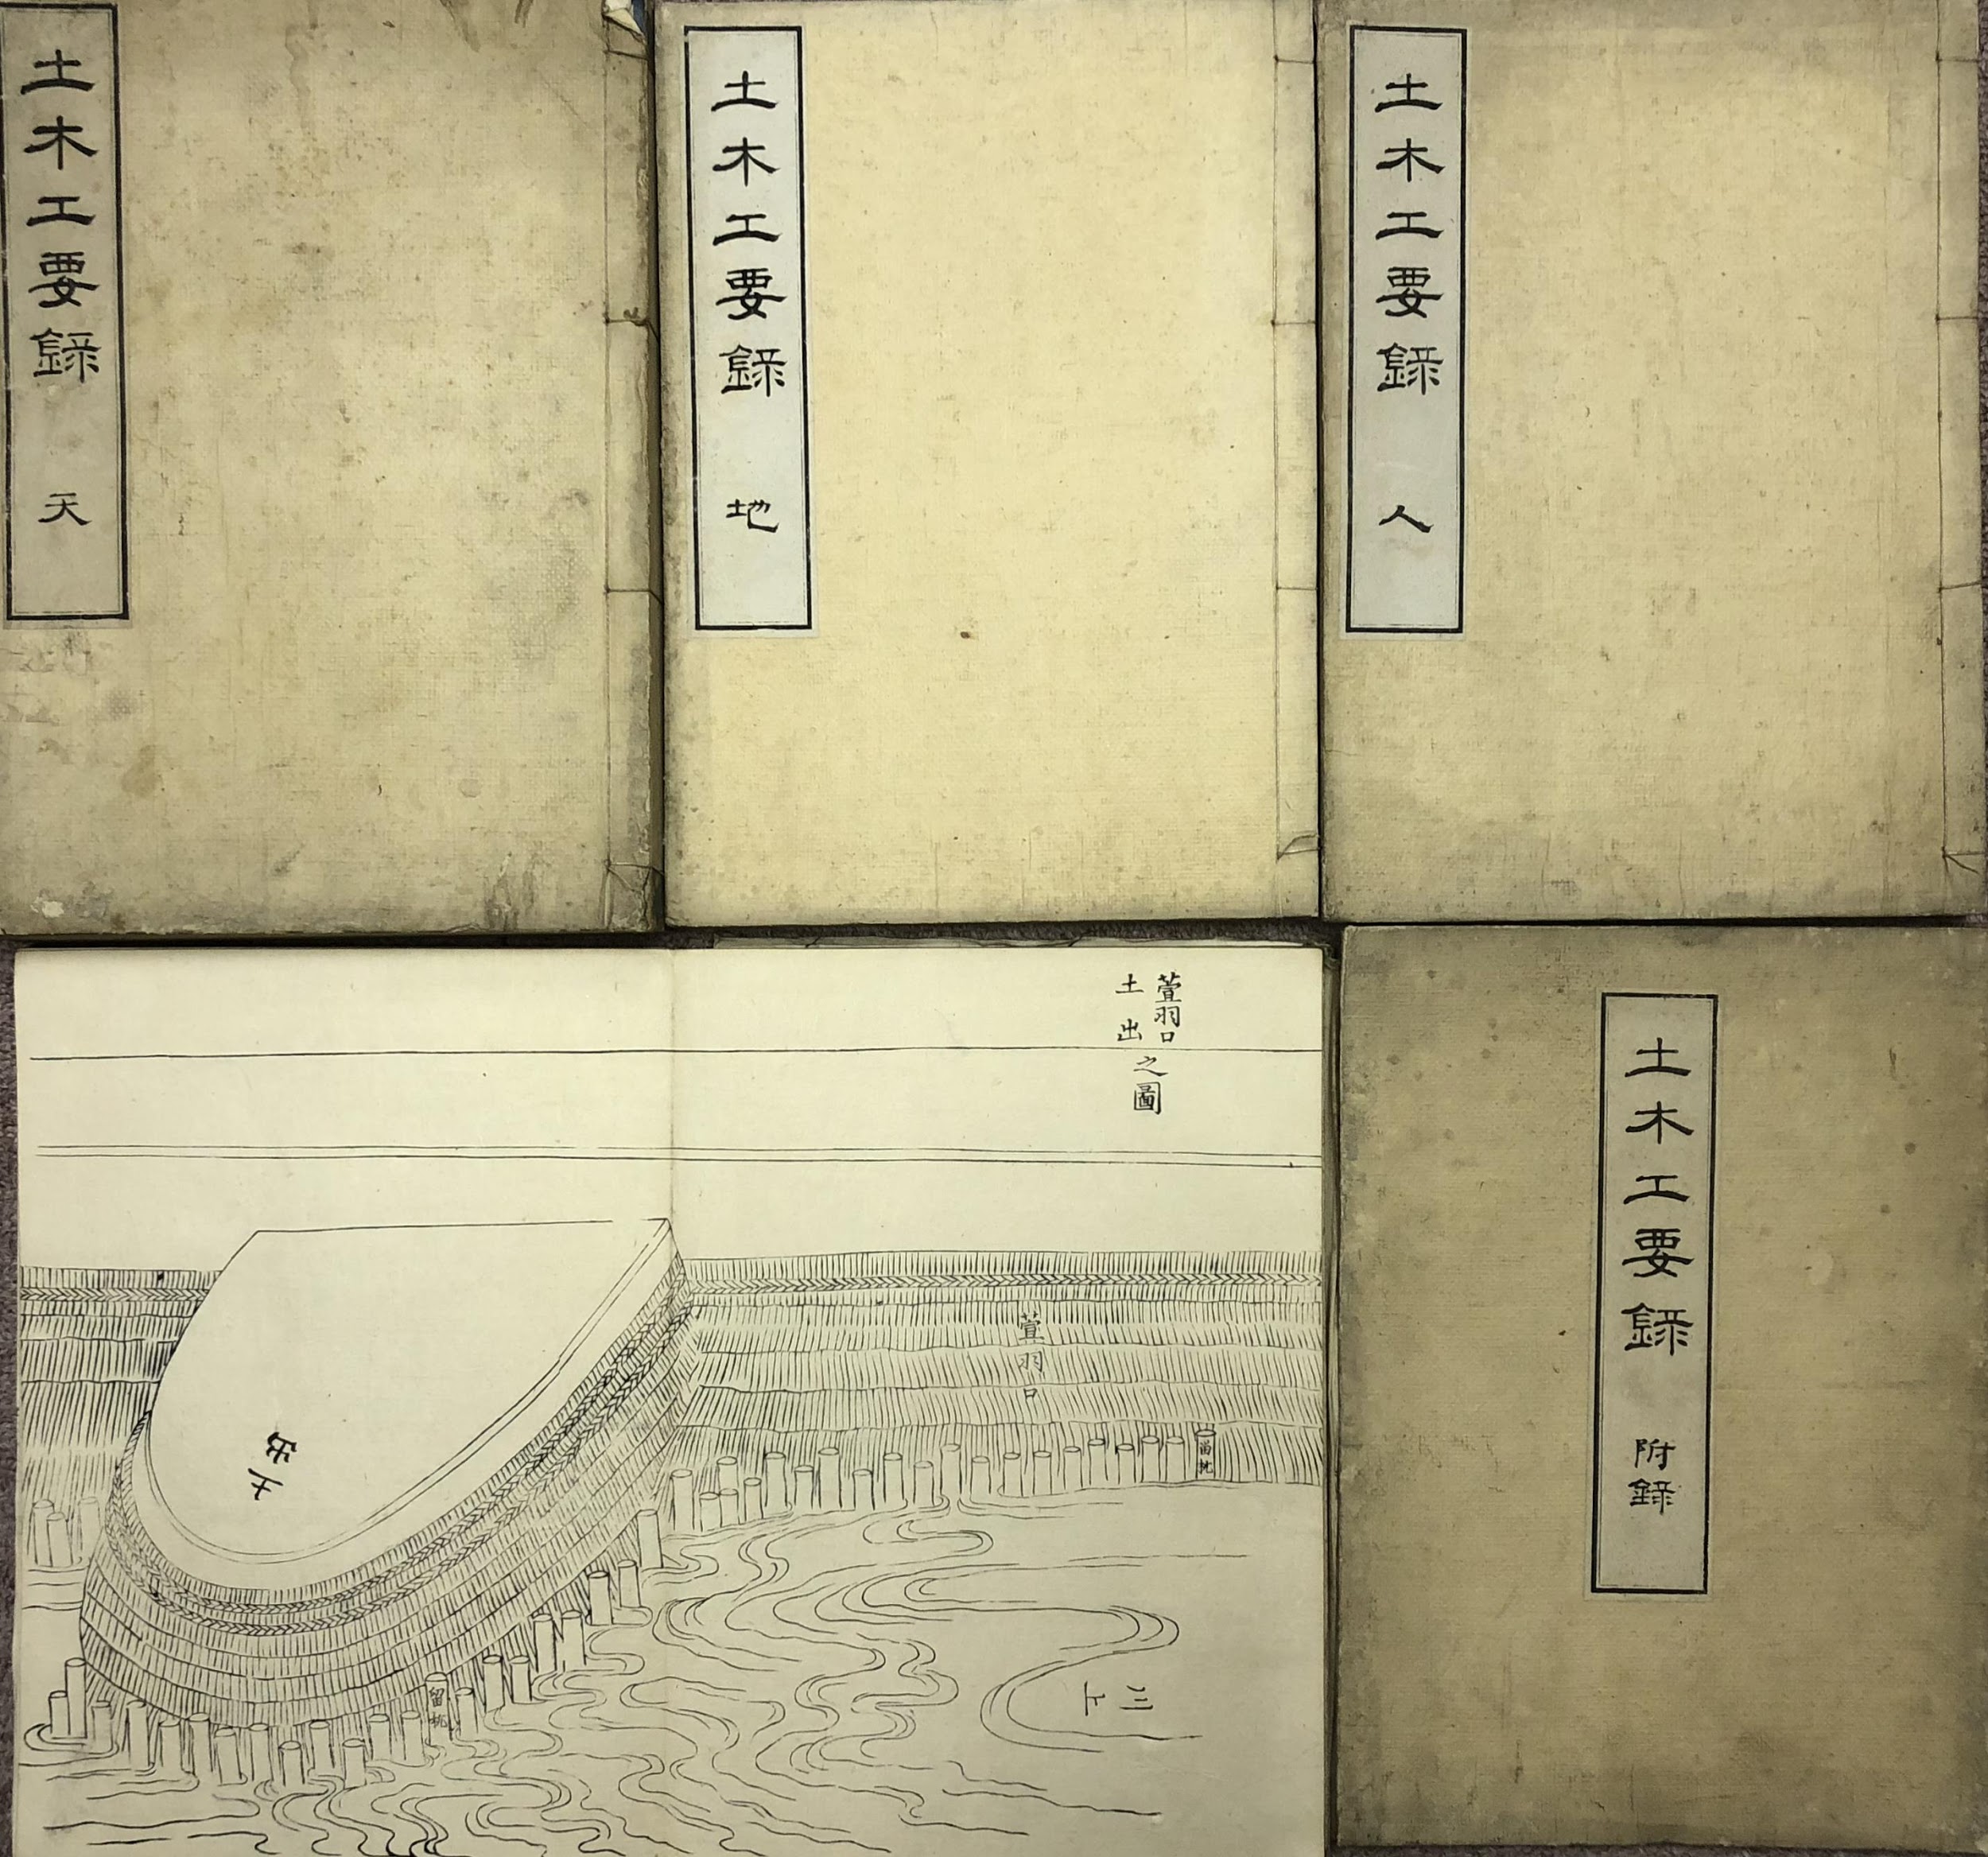 紙もの・近代資料(古地図・絵葉書・古写真) | 東京神田神保町 愛書館 